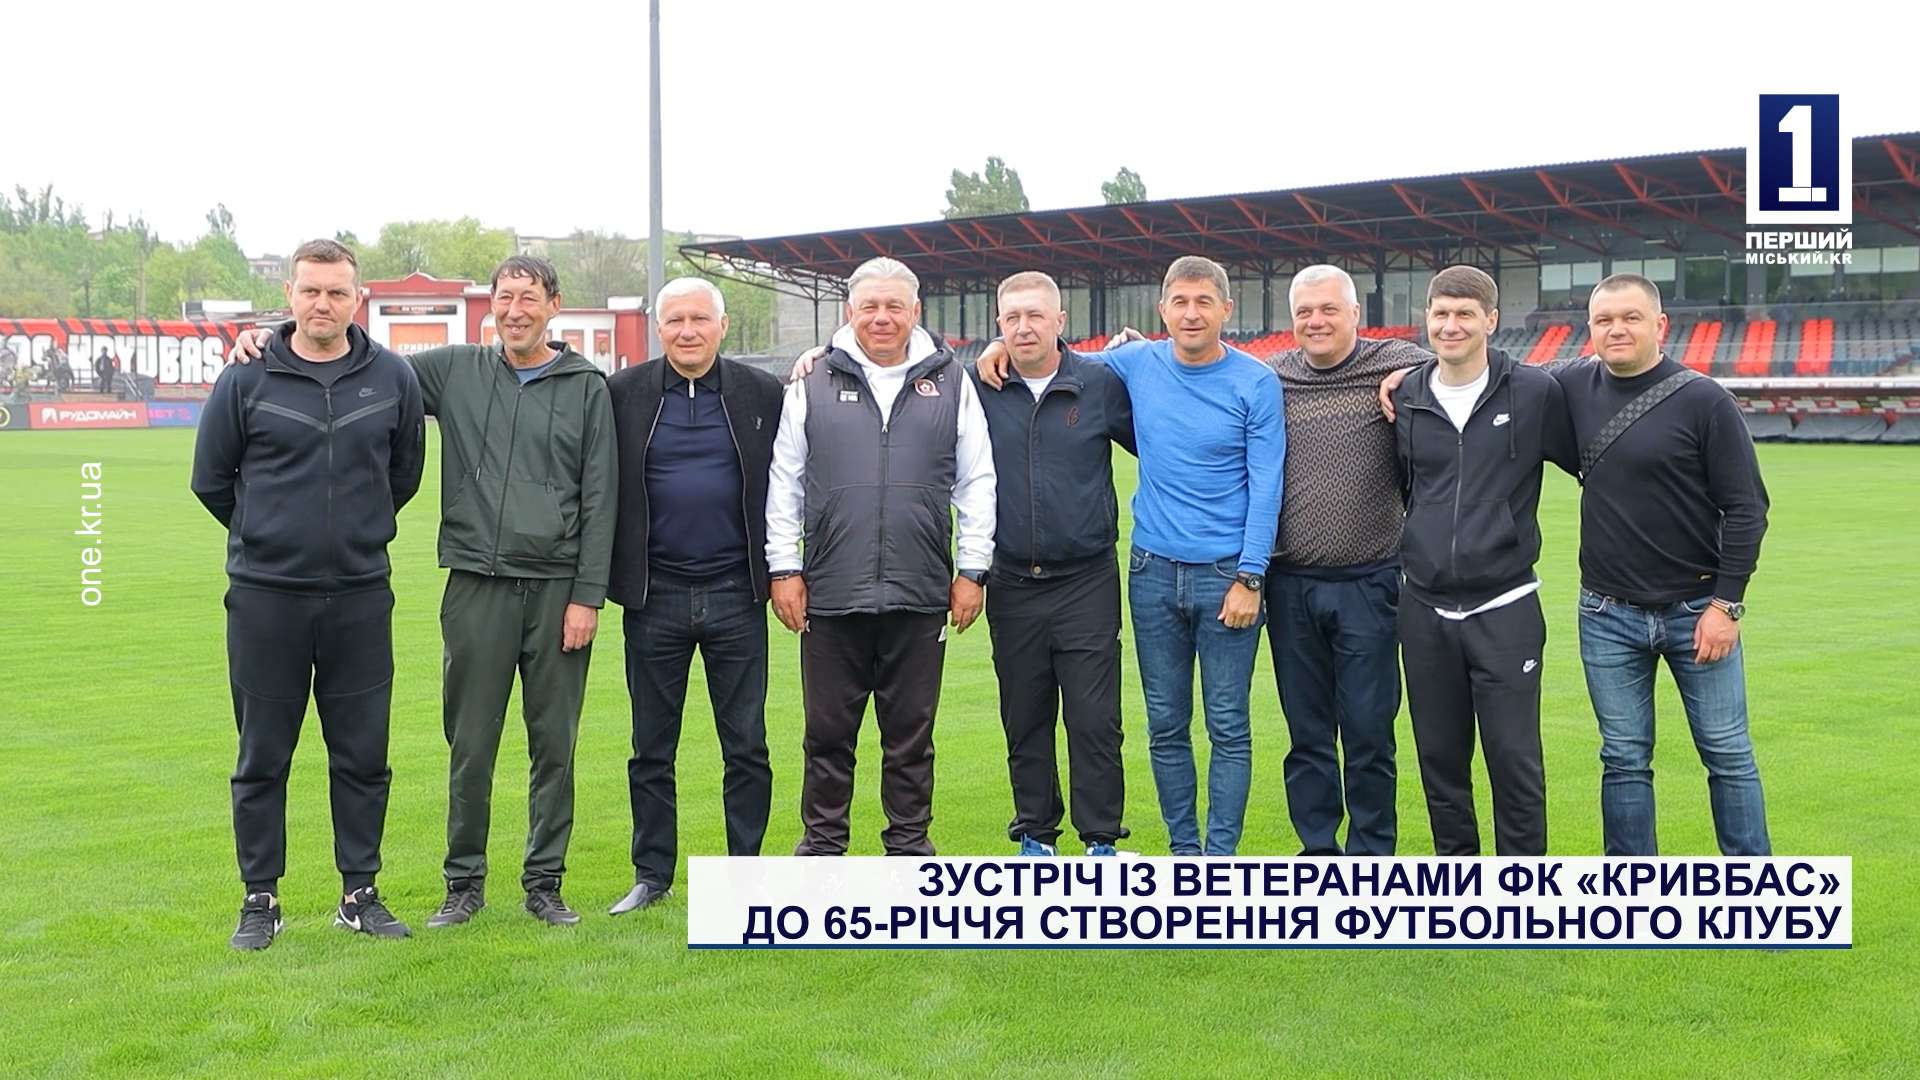 Зустріч із ветеранами ФК «Кривбас» до 65-річчя створення футбольного клубу